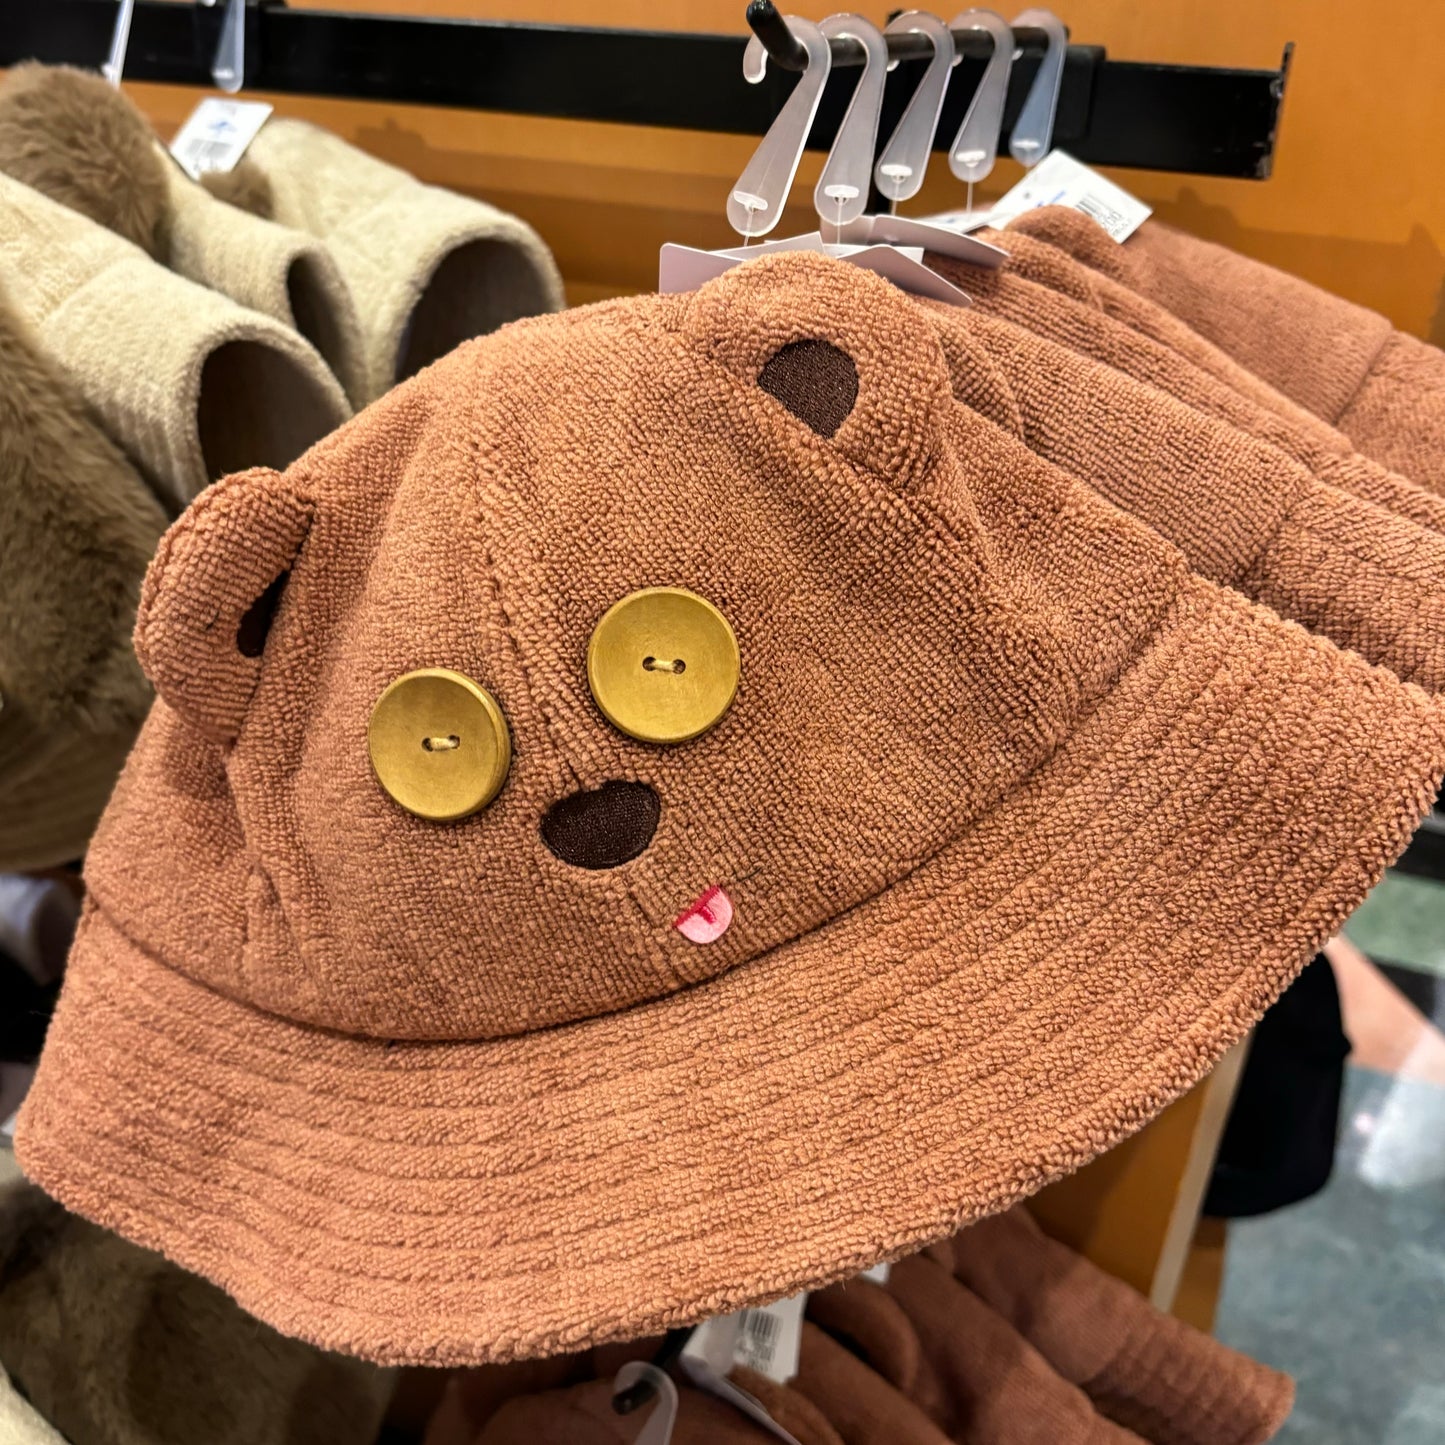 【訂貨】USJ Tim熊 Tim Bear 毛巾質料漁夫帽